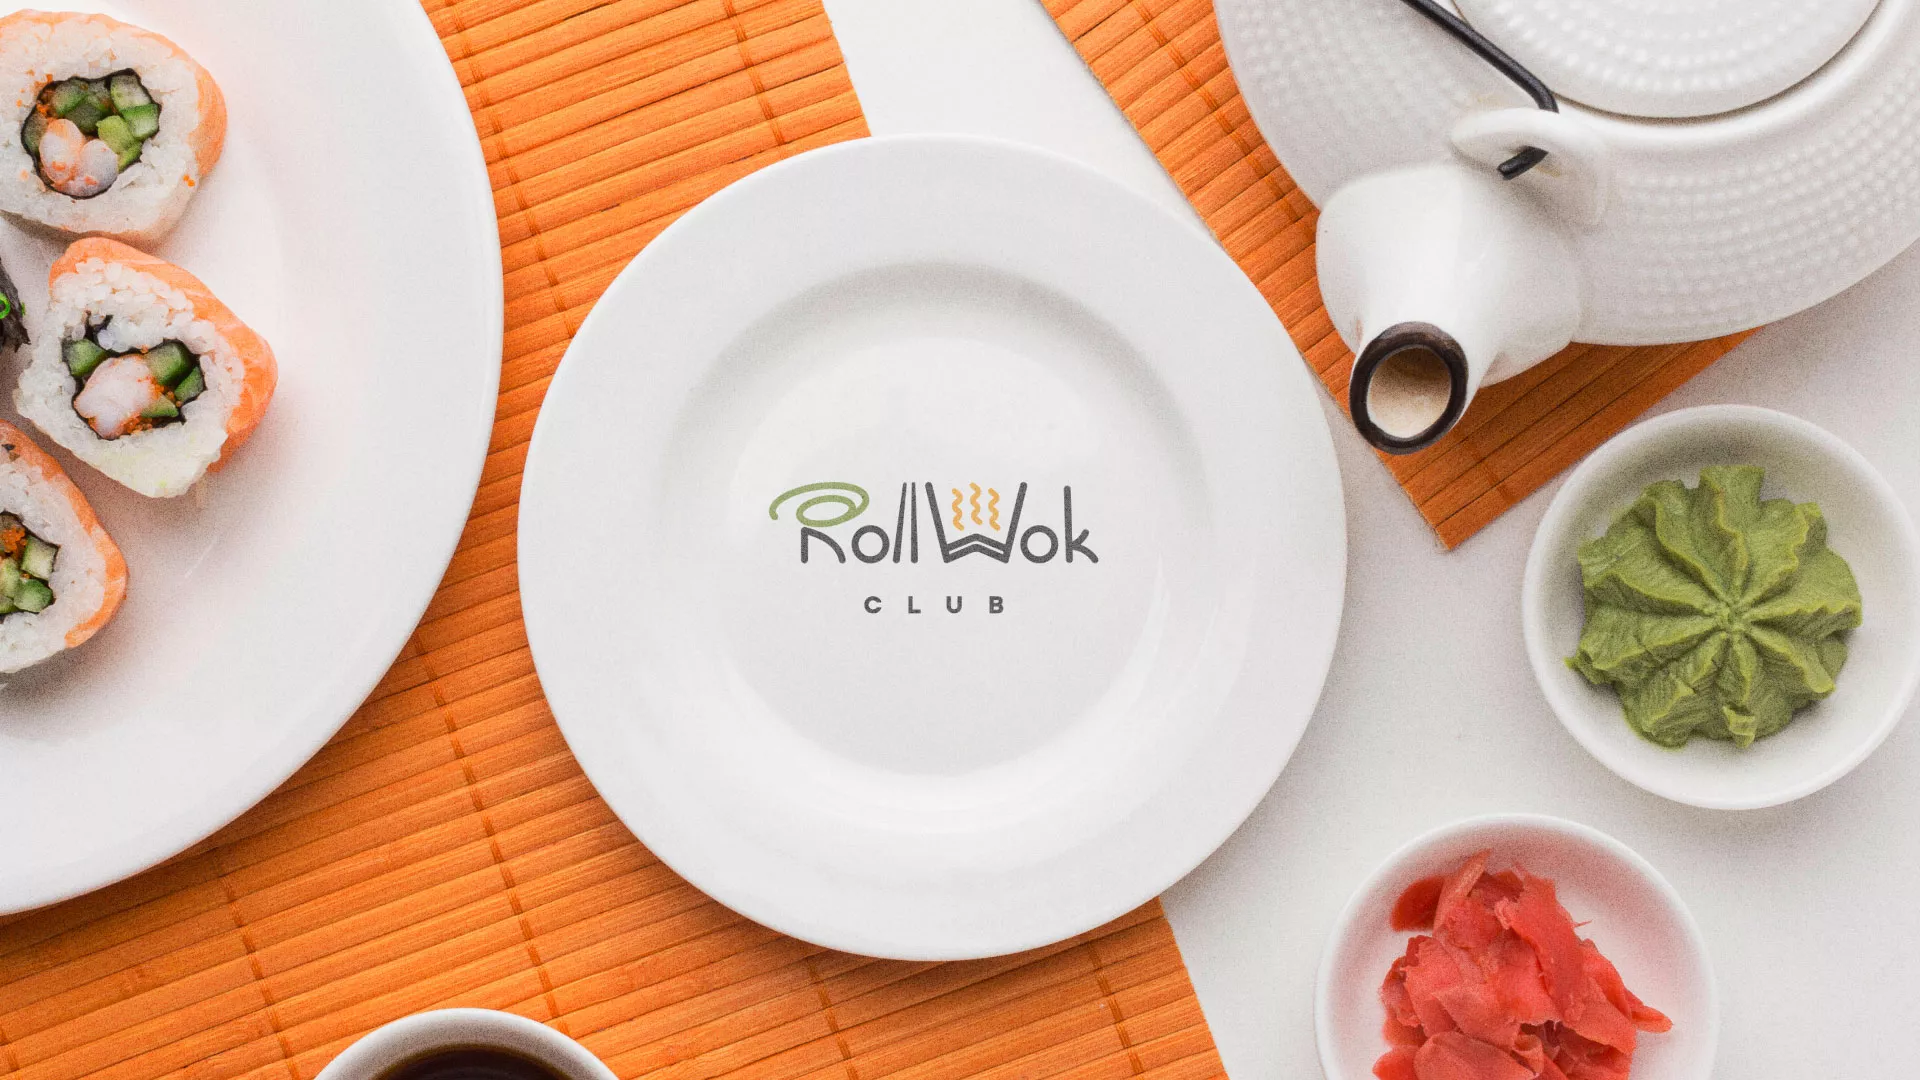 Разработка логотипа и фирменного стиля суши-бара «Roll Wok Club» в Приозерске